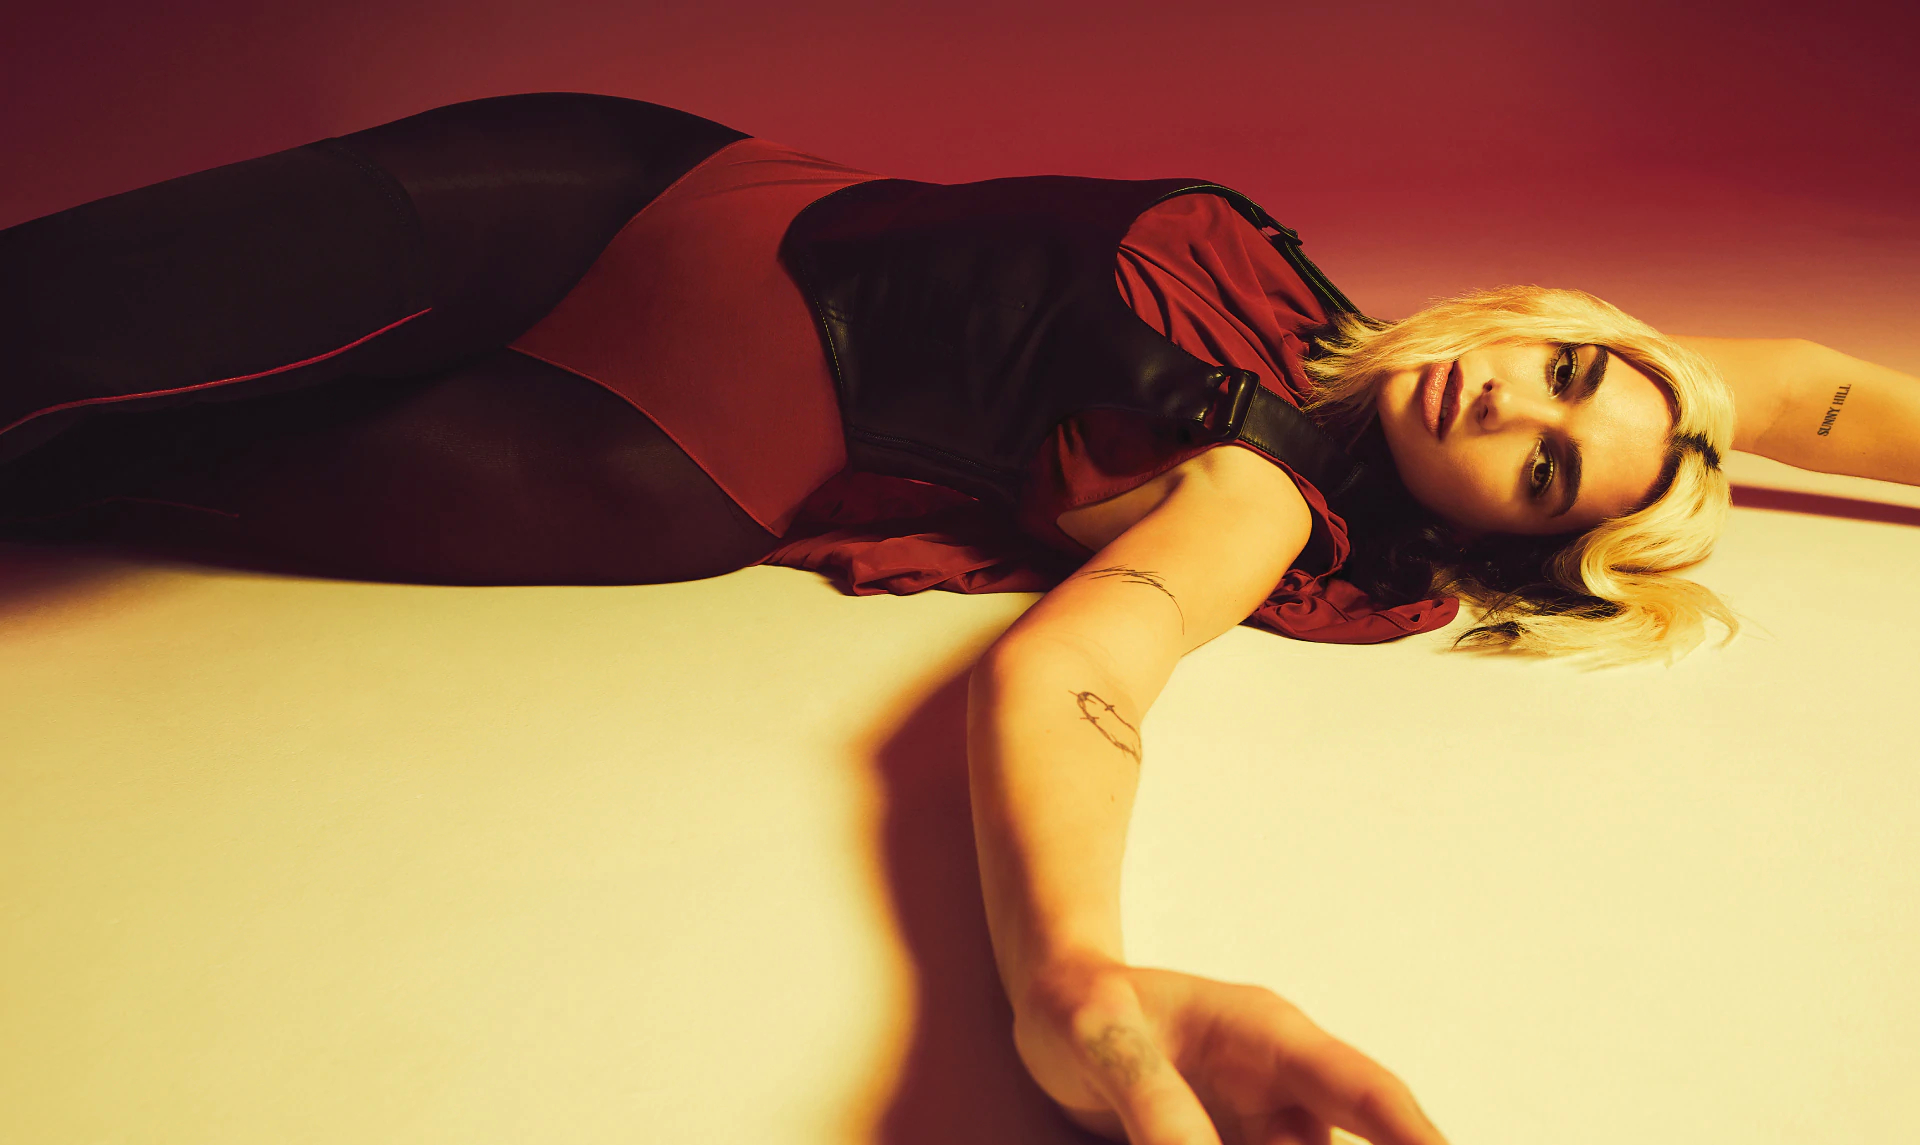 Fotos n°5 : Dua Lipa's Down Under para Vogue